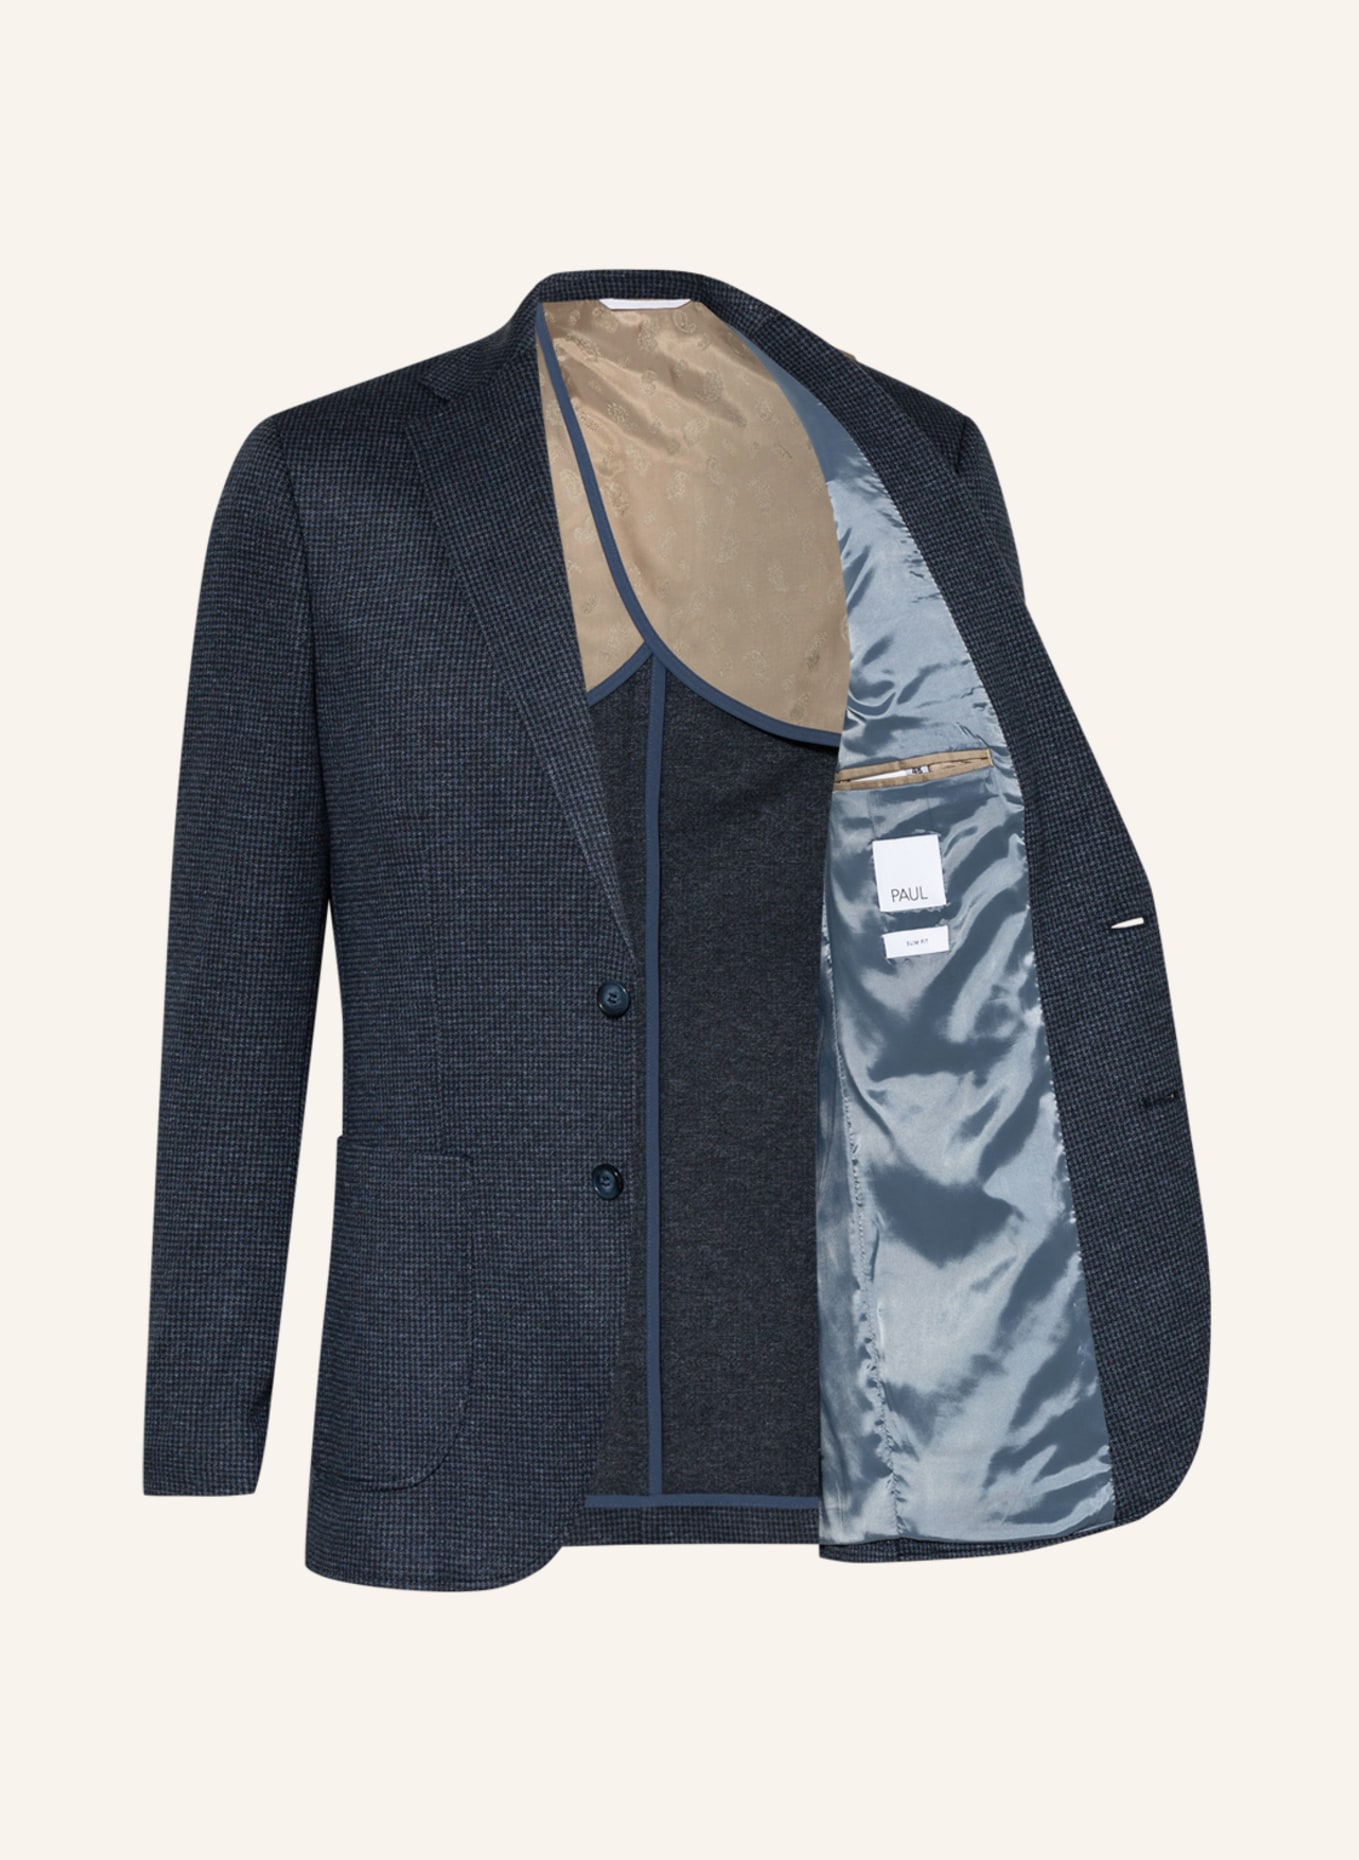 PAUL Suit jacket slim fit, Color: 660 navy (Image 4)